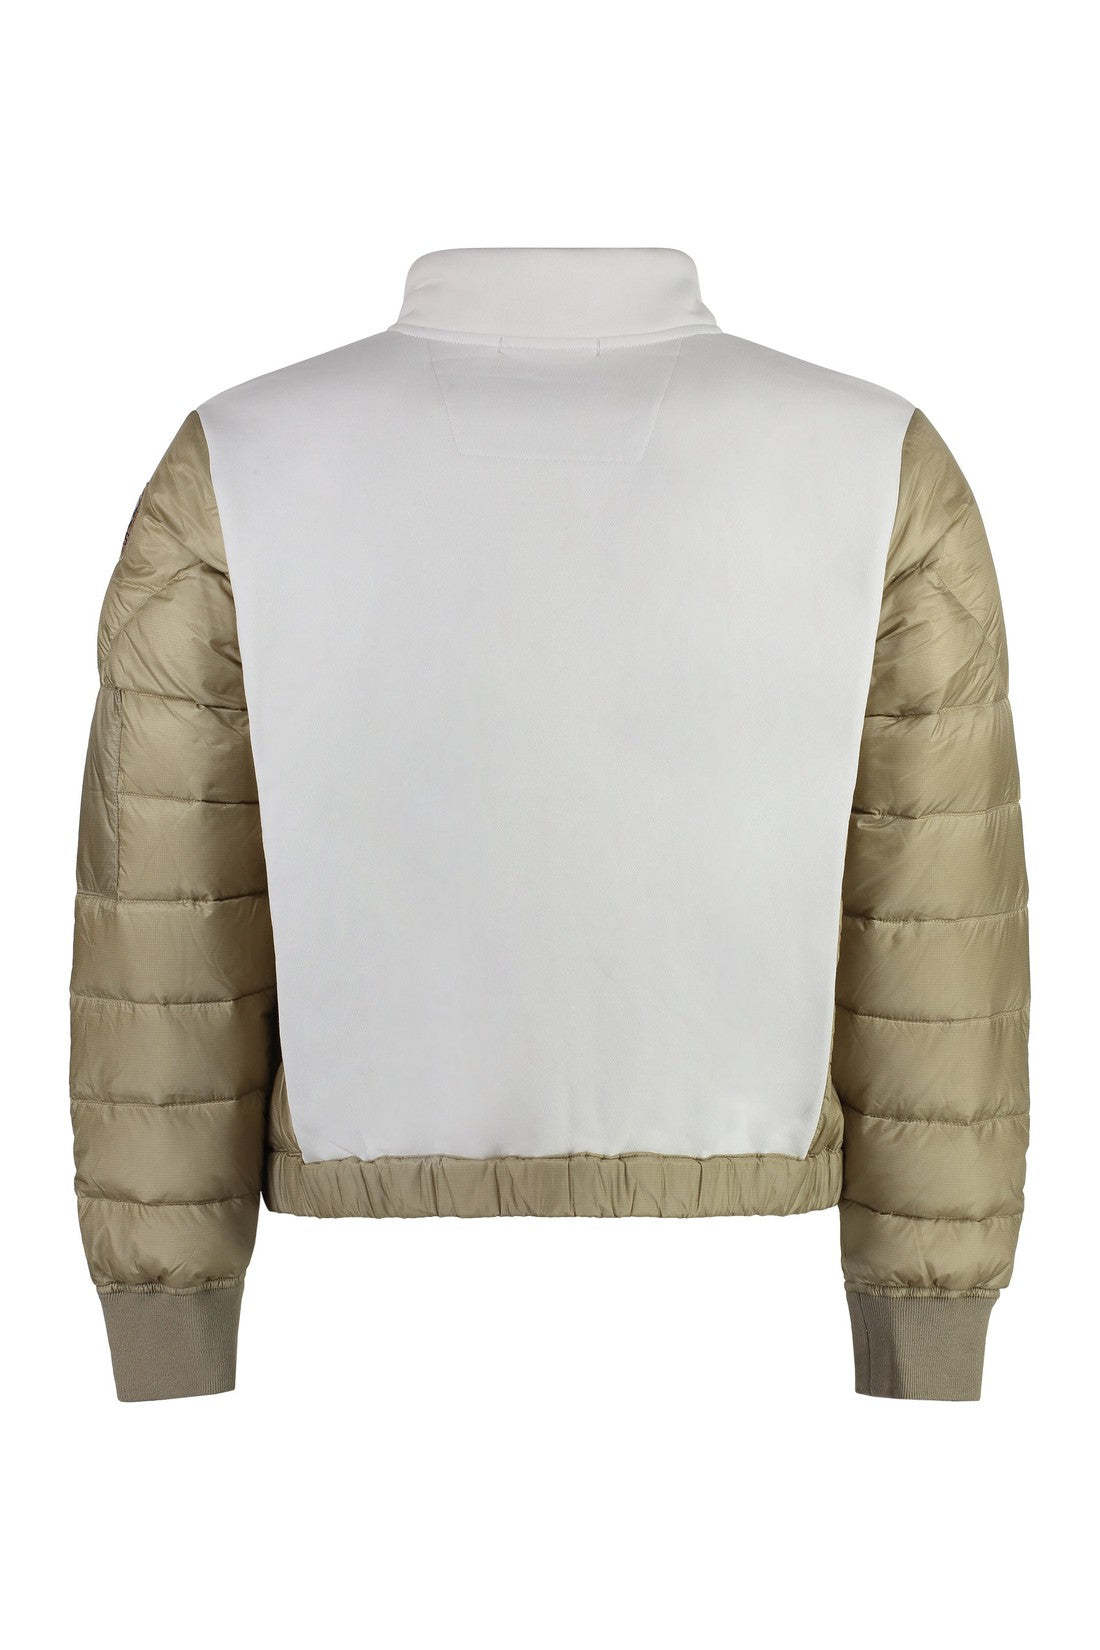 Parajumpers-OUTLET-SALE-Cotton full-zip sweatshirt-ARCHIVIST